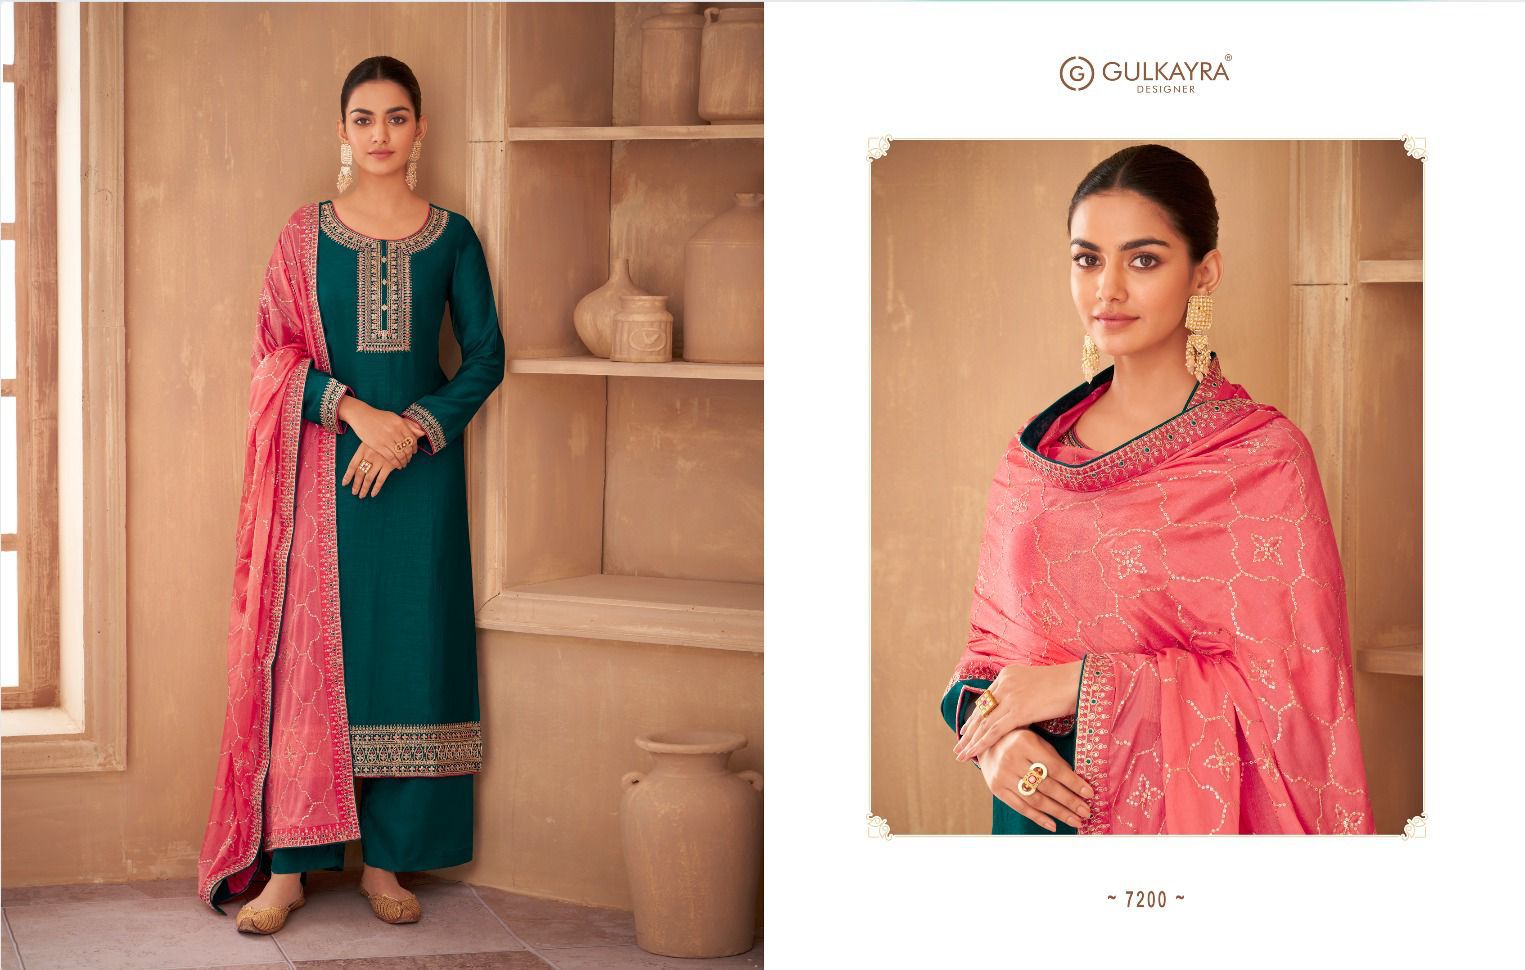 gulkayra designer nayan vichitra silk grace ful look salwar suit catalog